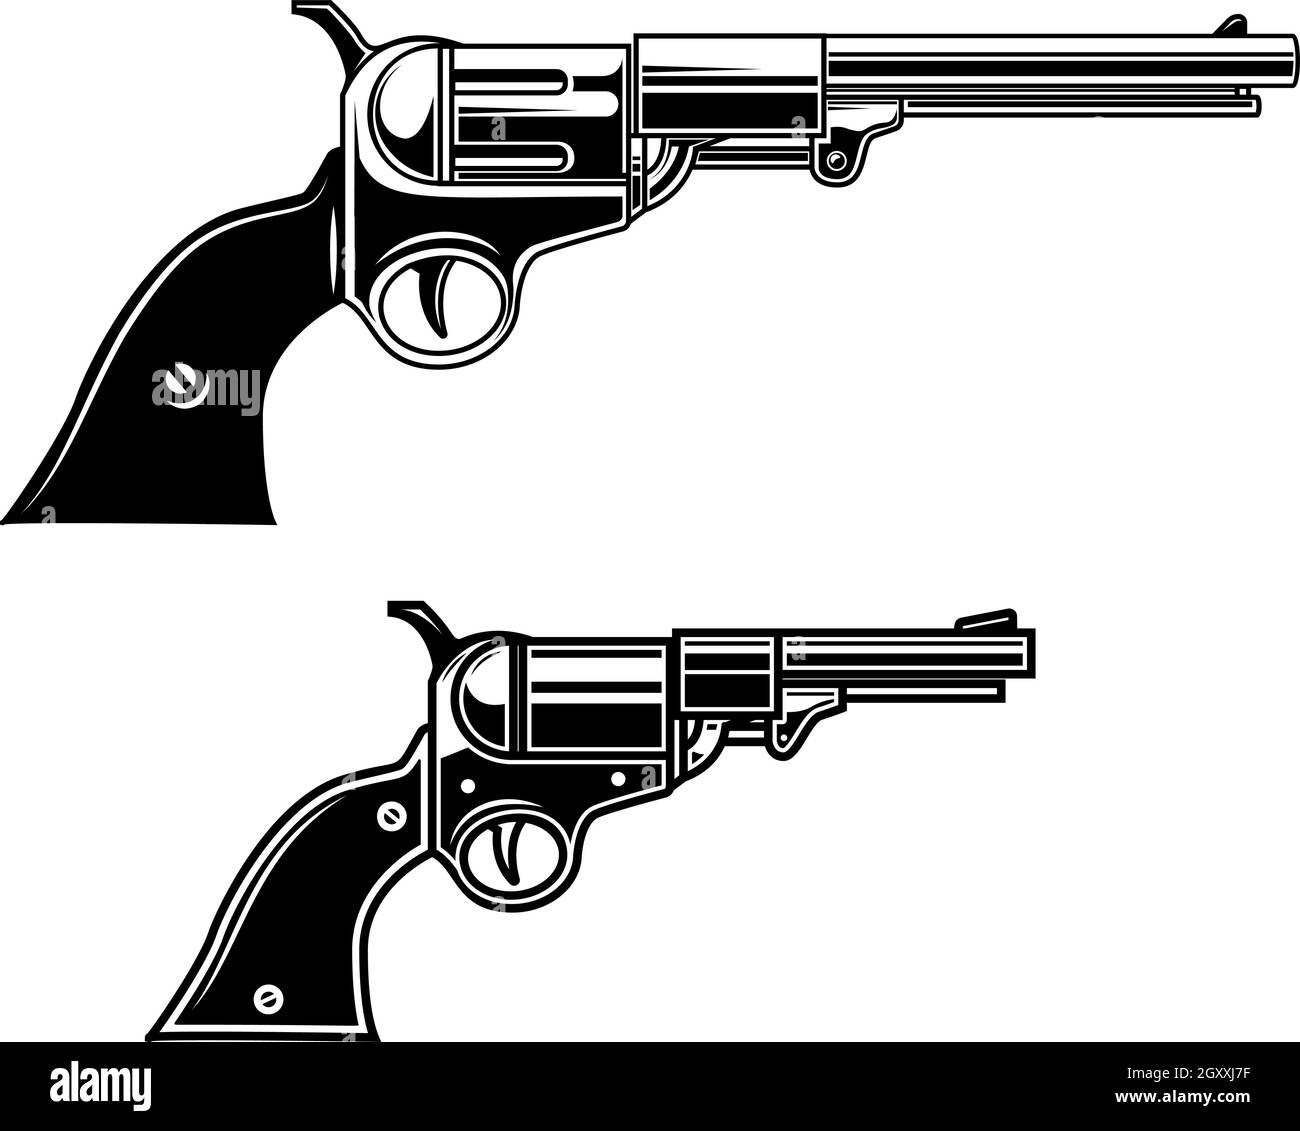 Illustration of cowboy revolvers . Design element for logo, label, sign, emblem, poster. Vector illustration Stock Vector